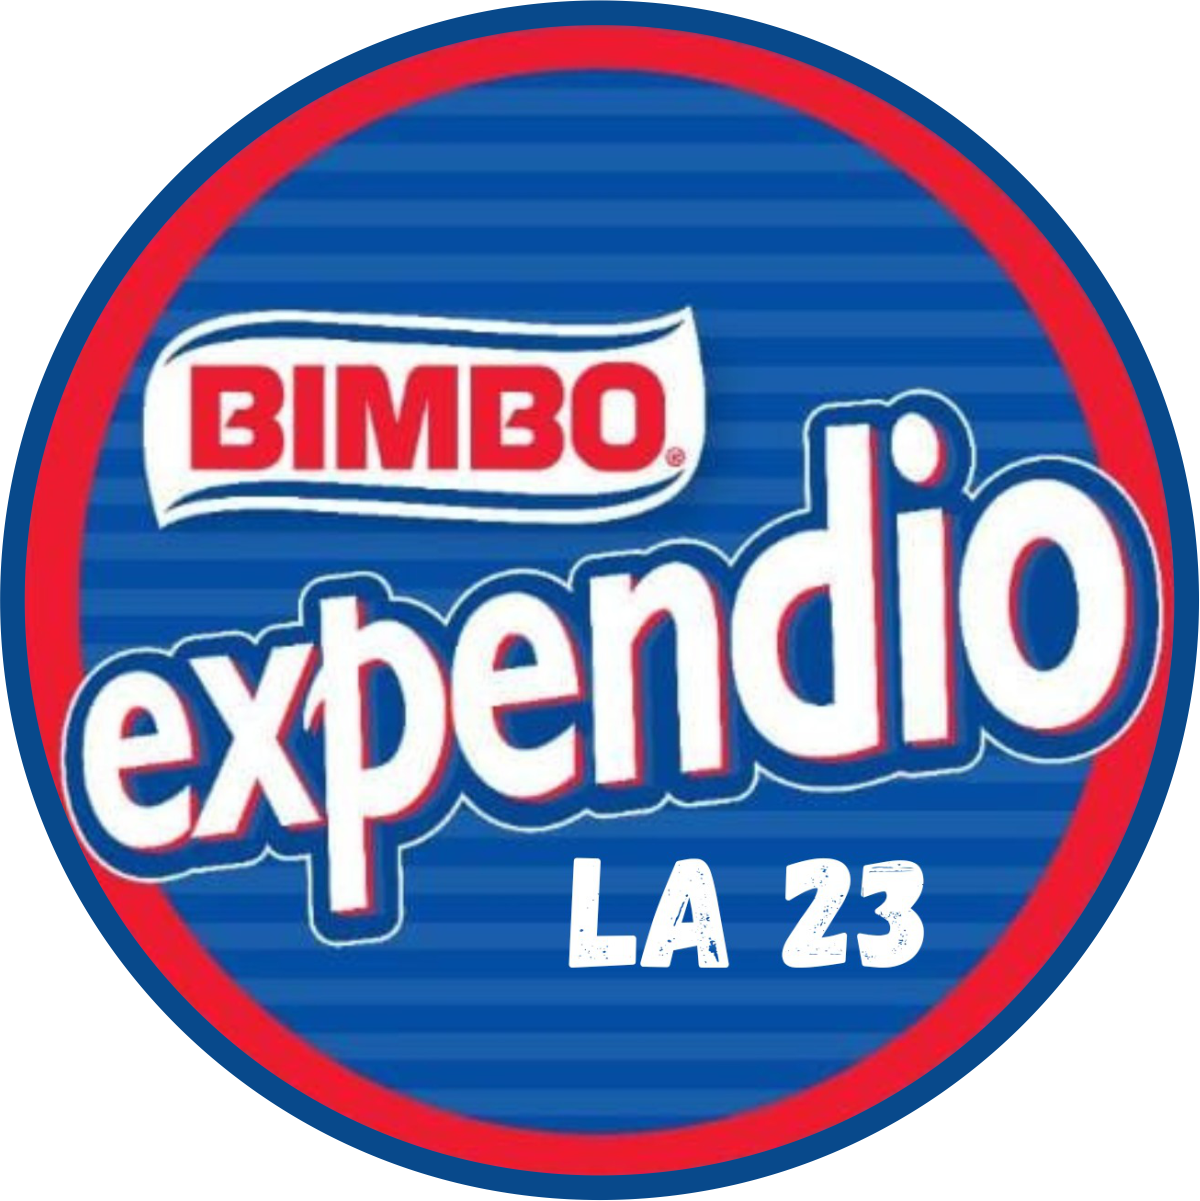 Bimbo Expendio La 23